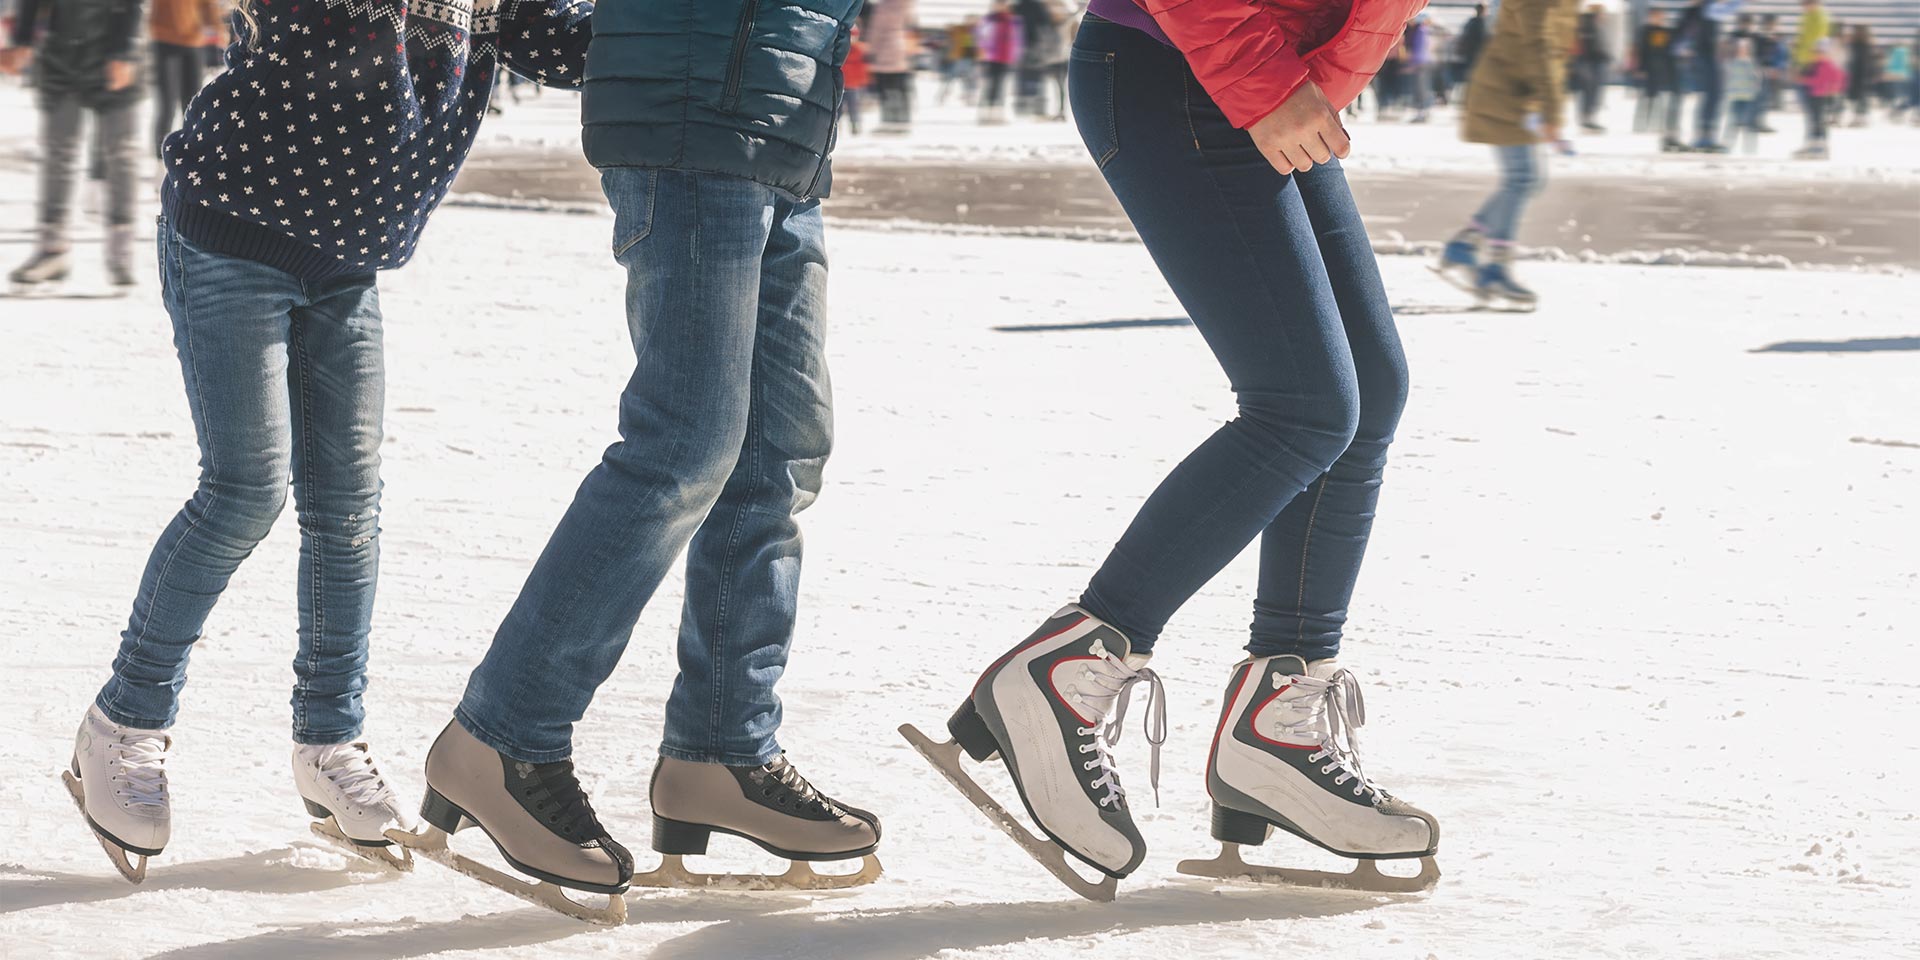 three people ice skating